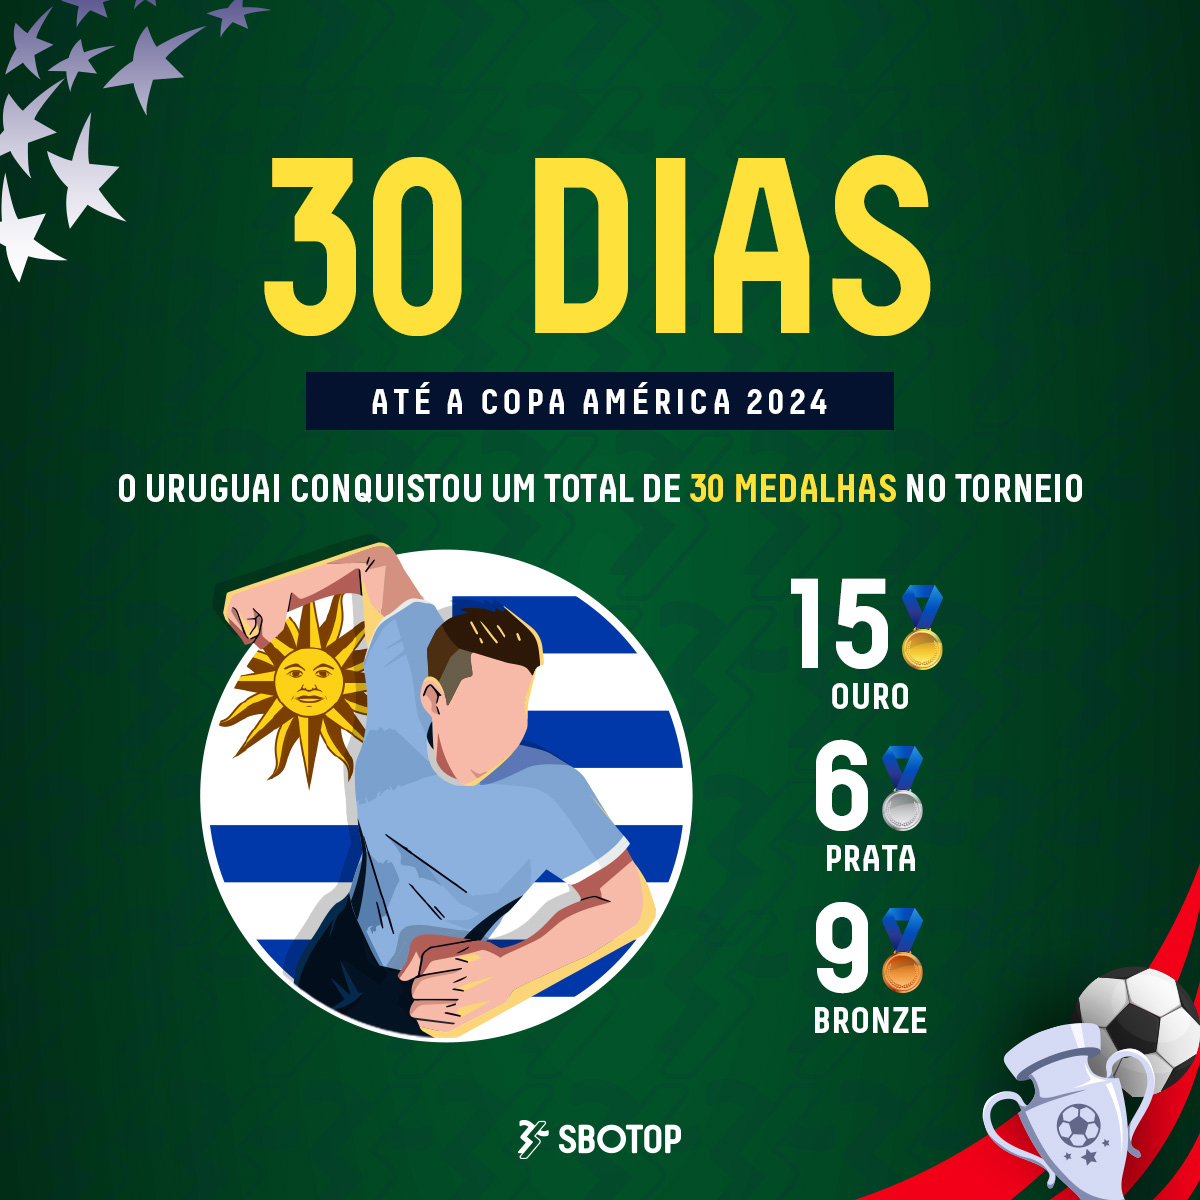 Faltam 30 dias para o maior torneio da América do Sul! Será que desta vez o Uruguai vai acabar com a seca de troféus? #CopaAmerica